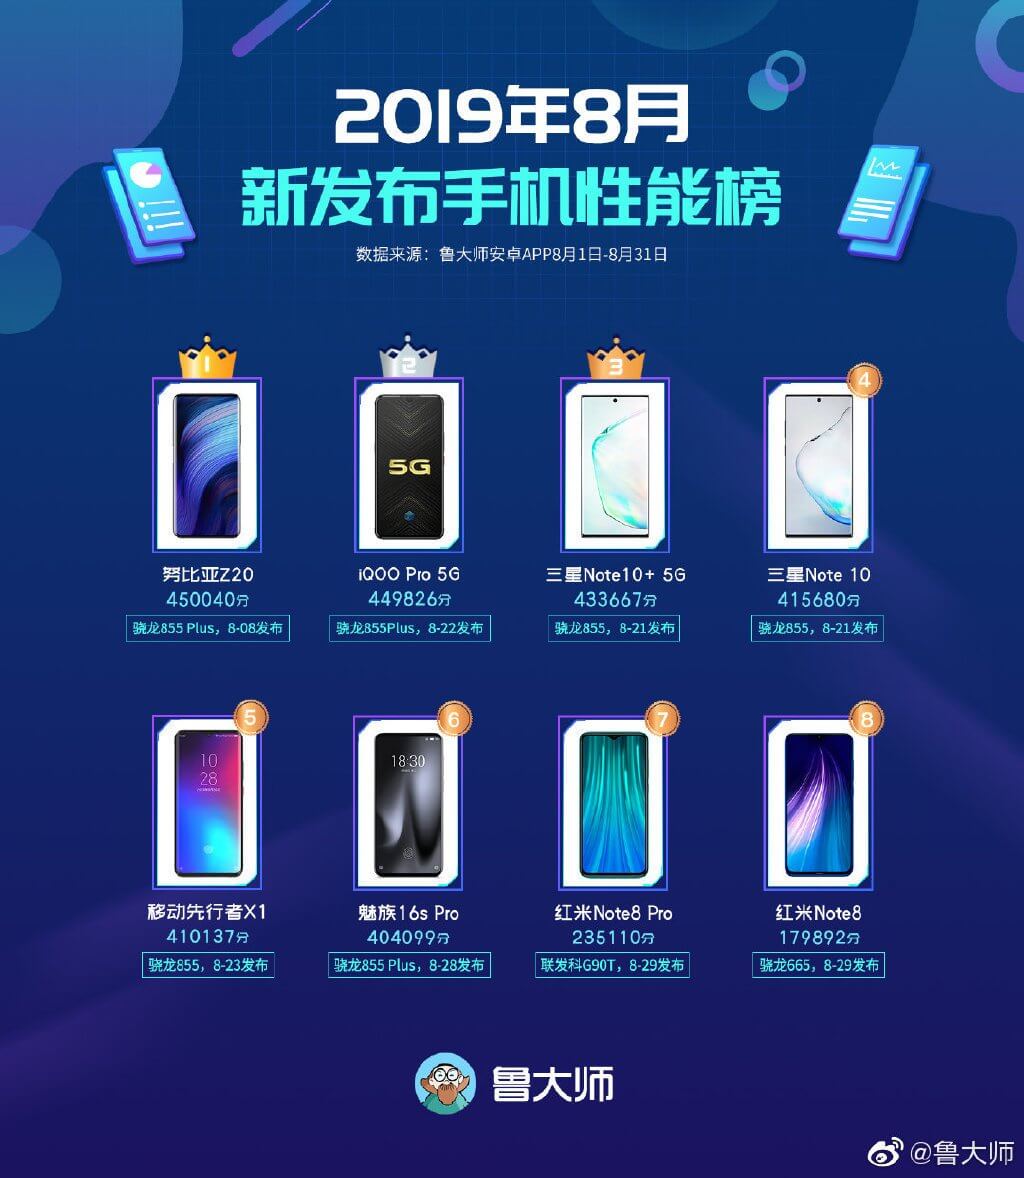 TOP 8 smartphone terbaik untuk Agustus 2019 menurut Master Lu